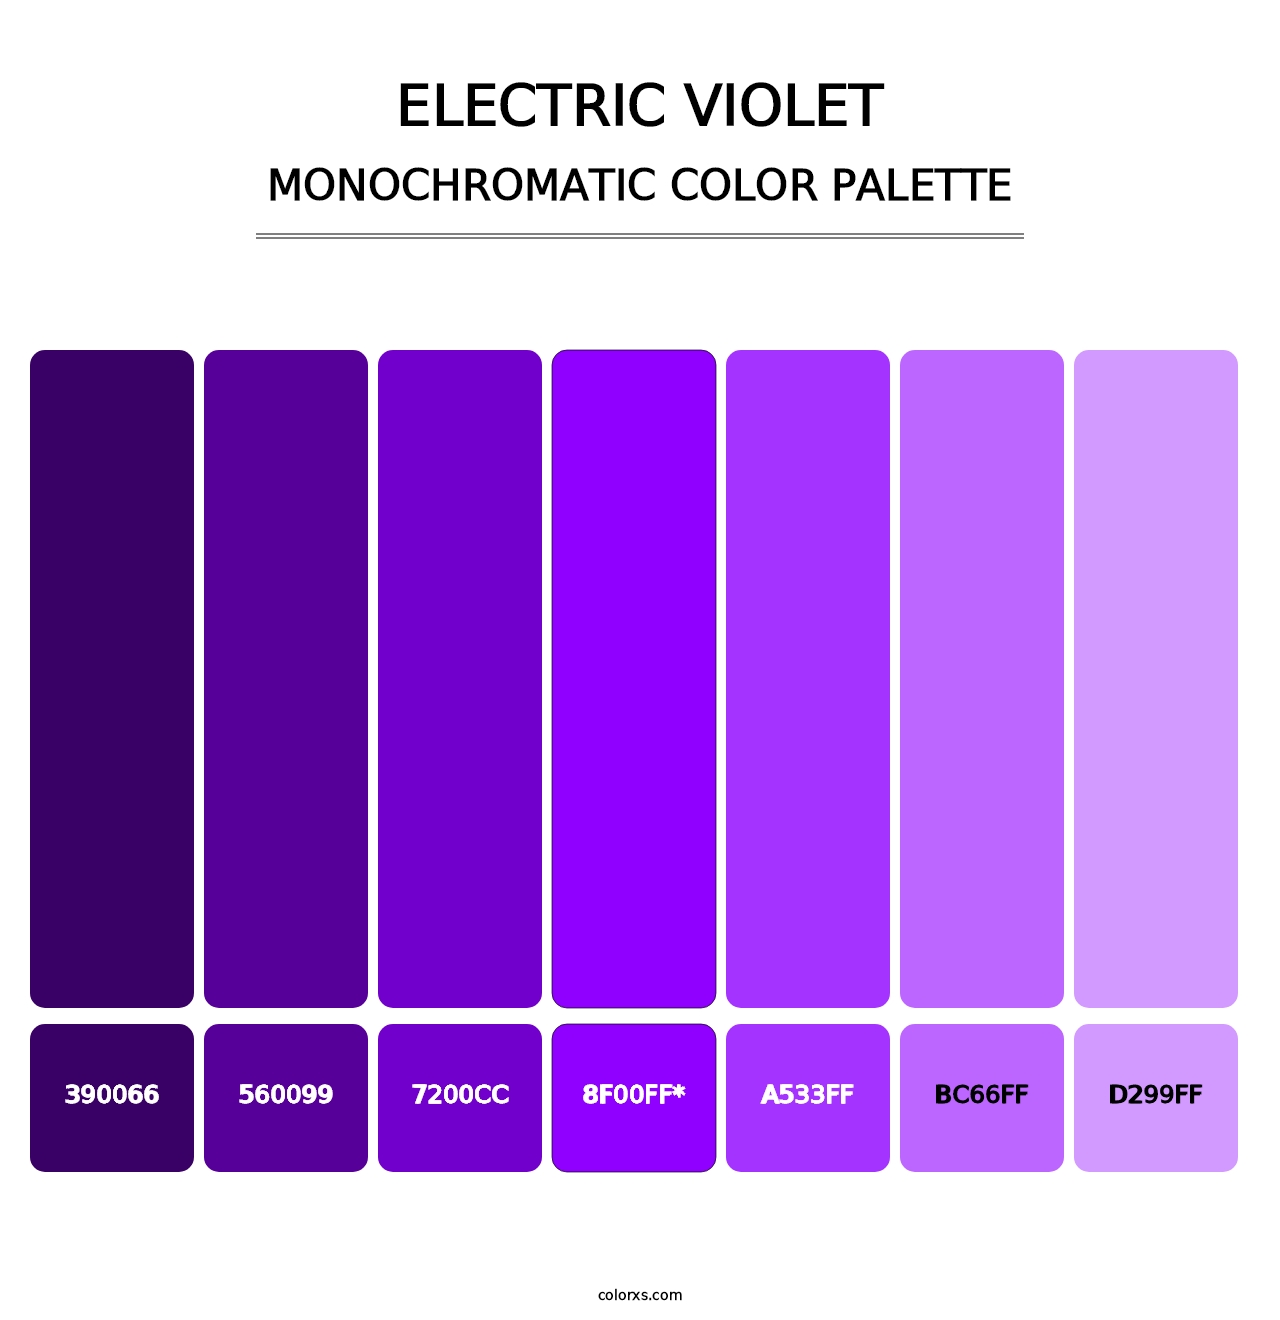 Electric Violet - Monochromatic Color Palette